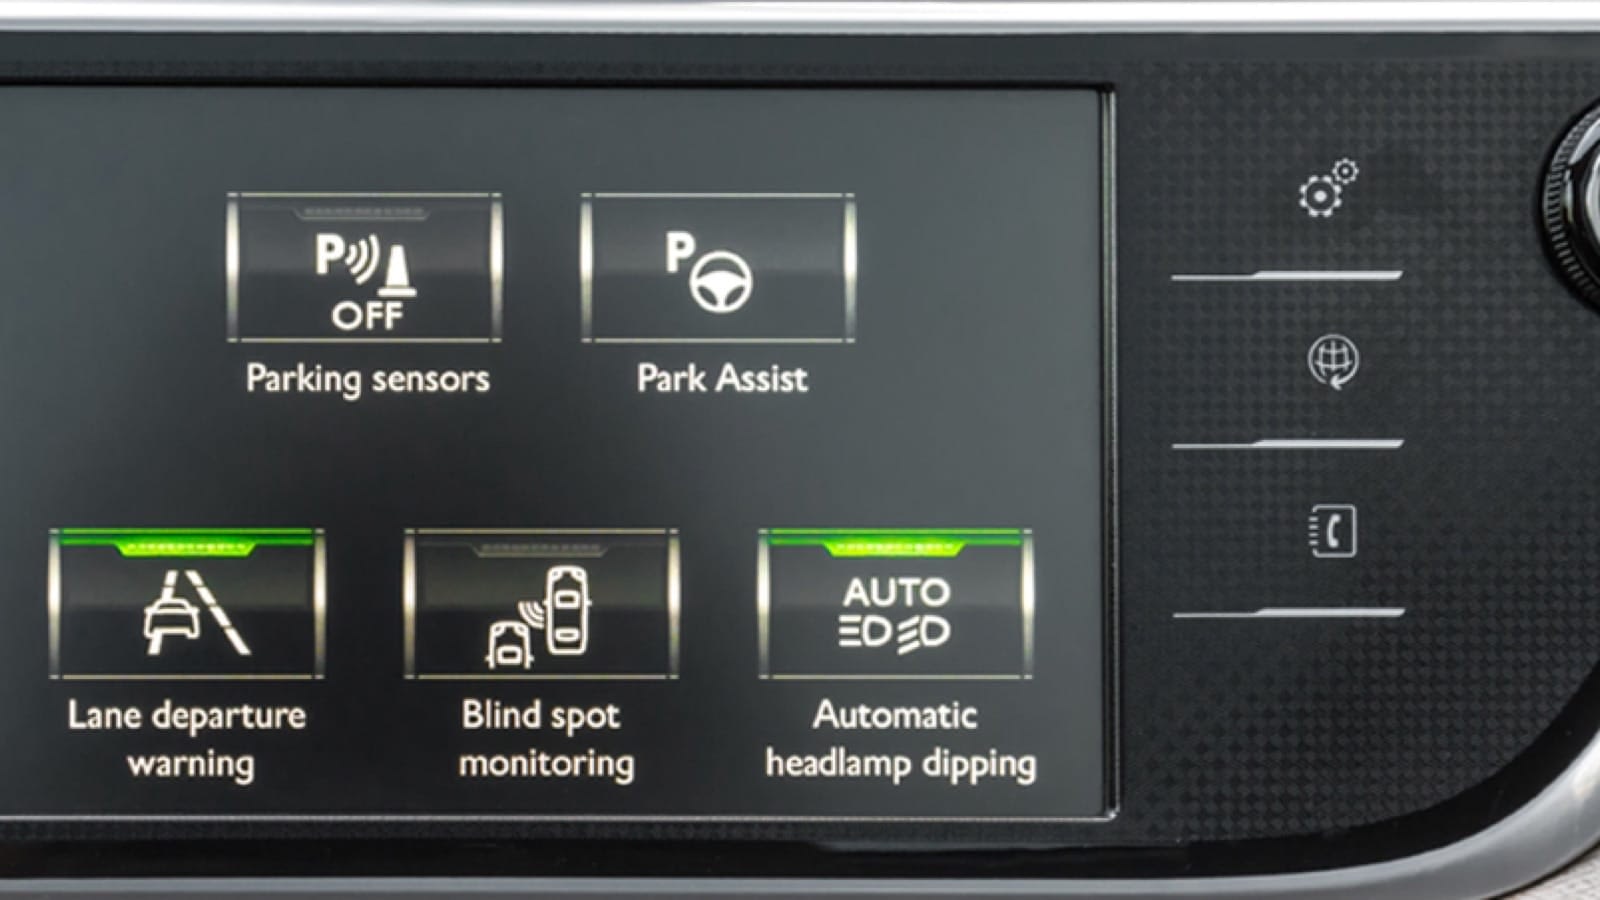 Digital car dashboard